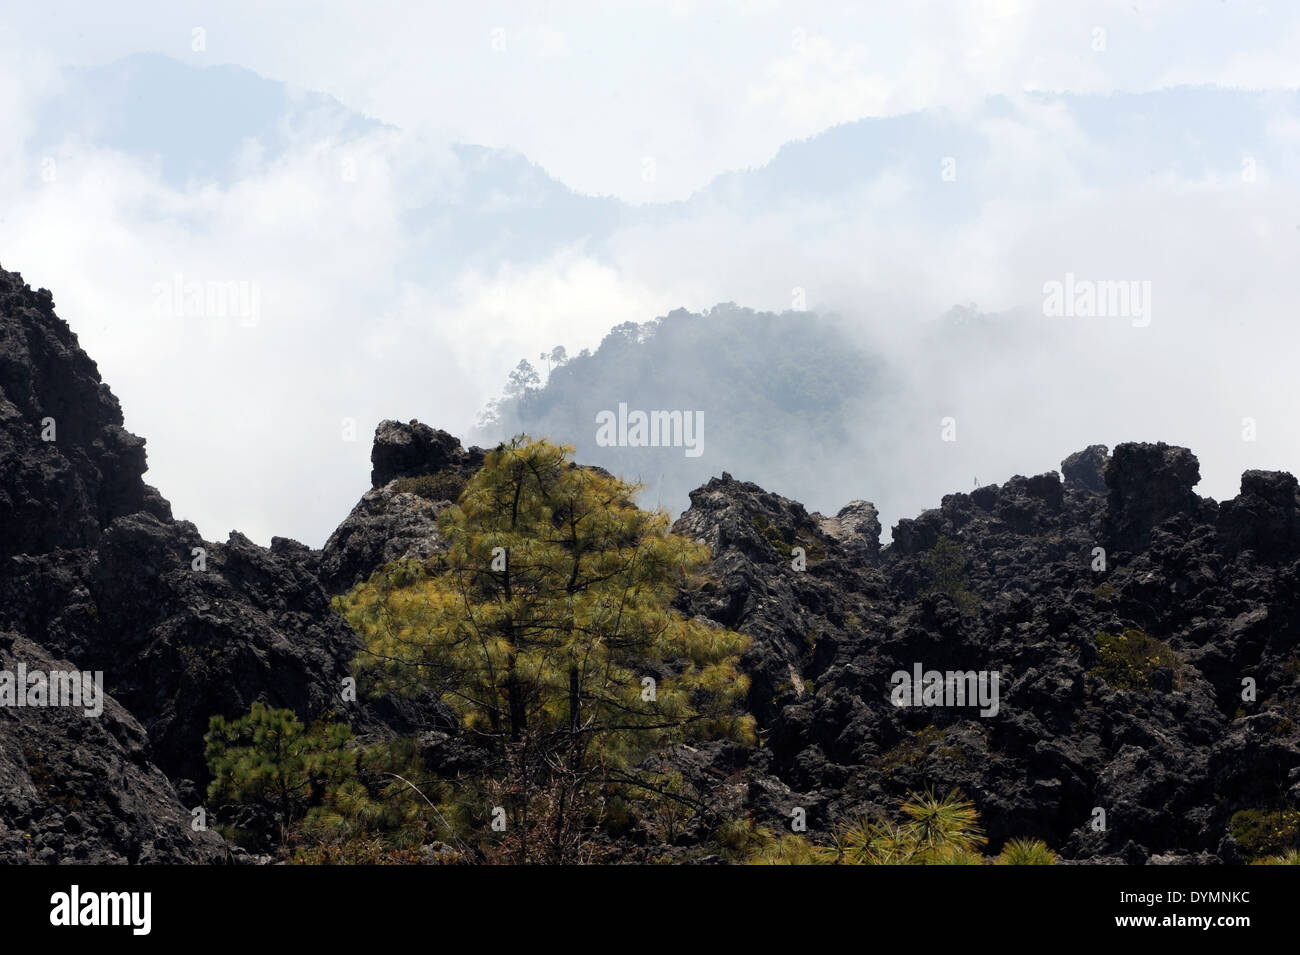 Vivid verde de los pinos crecen en un campo de lava negra en el Mar de Piedra, el Mar de Piedra, una zona de corrientes de lava solidificada Foto de stock